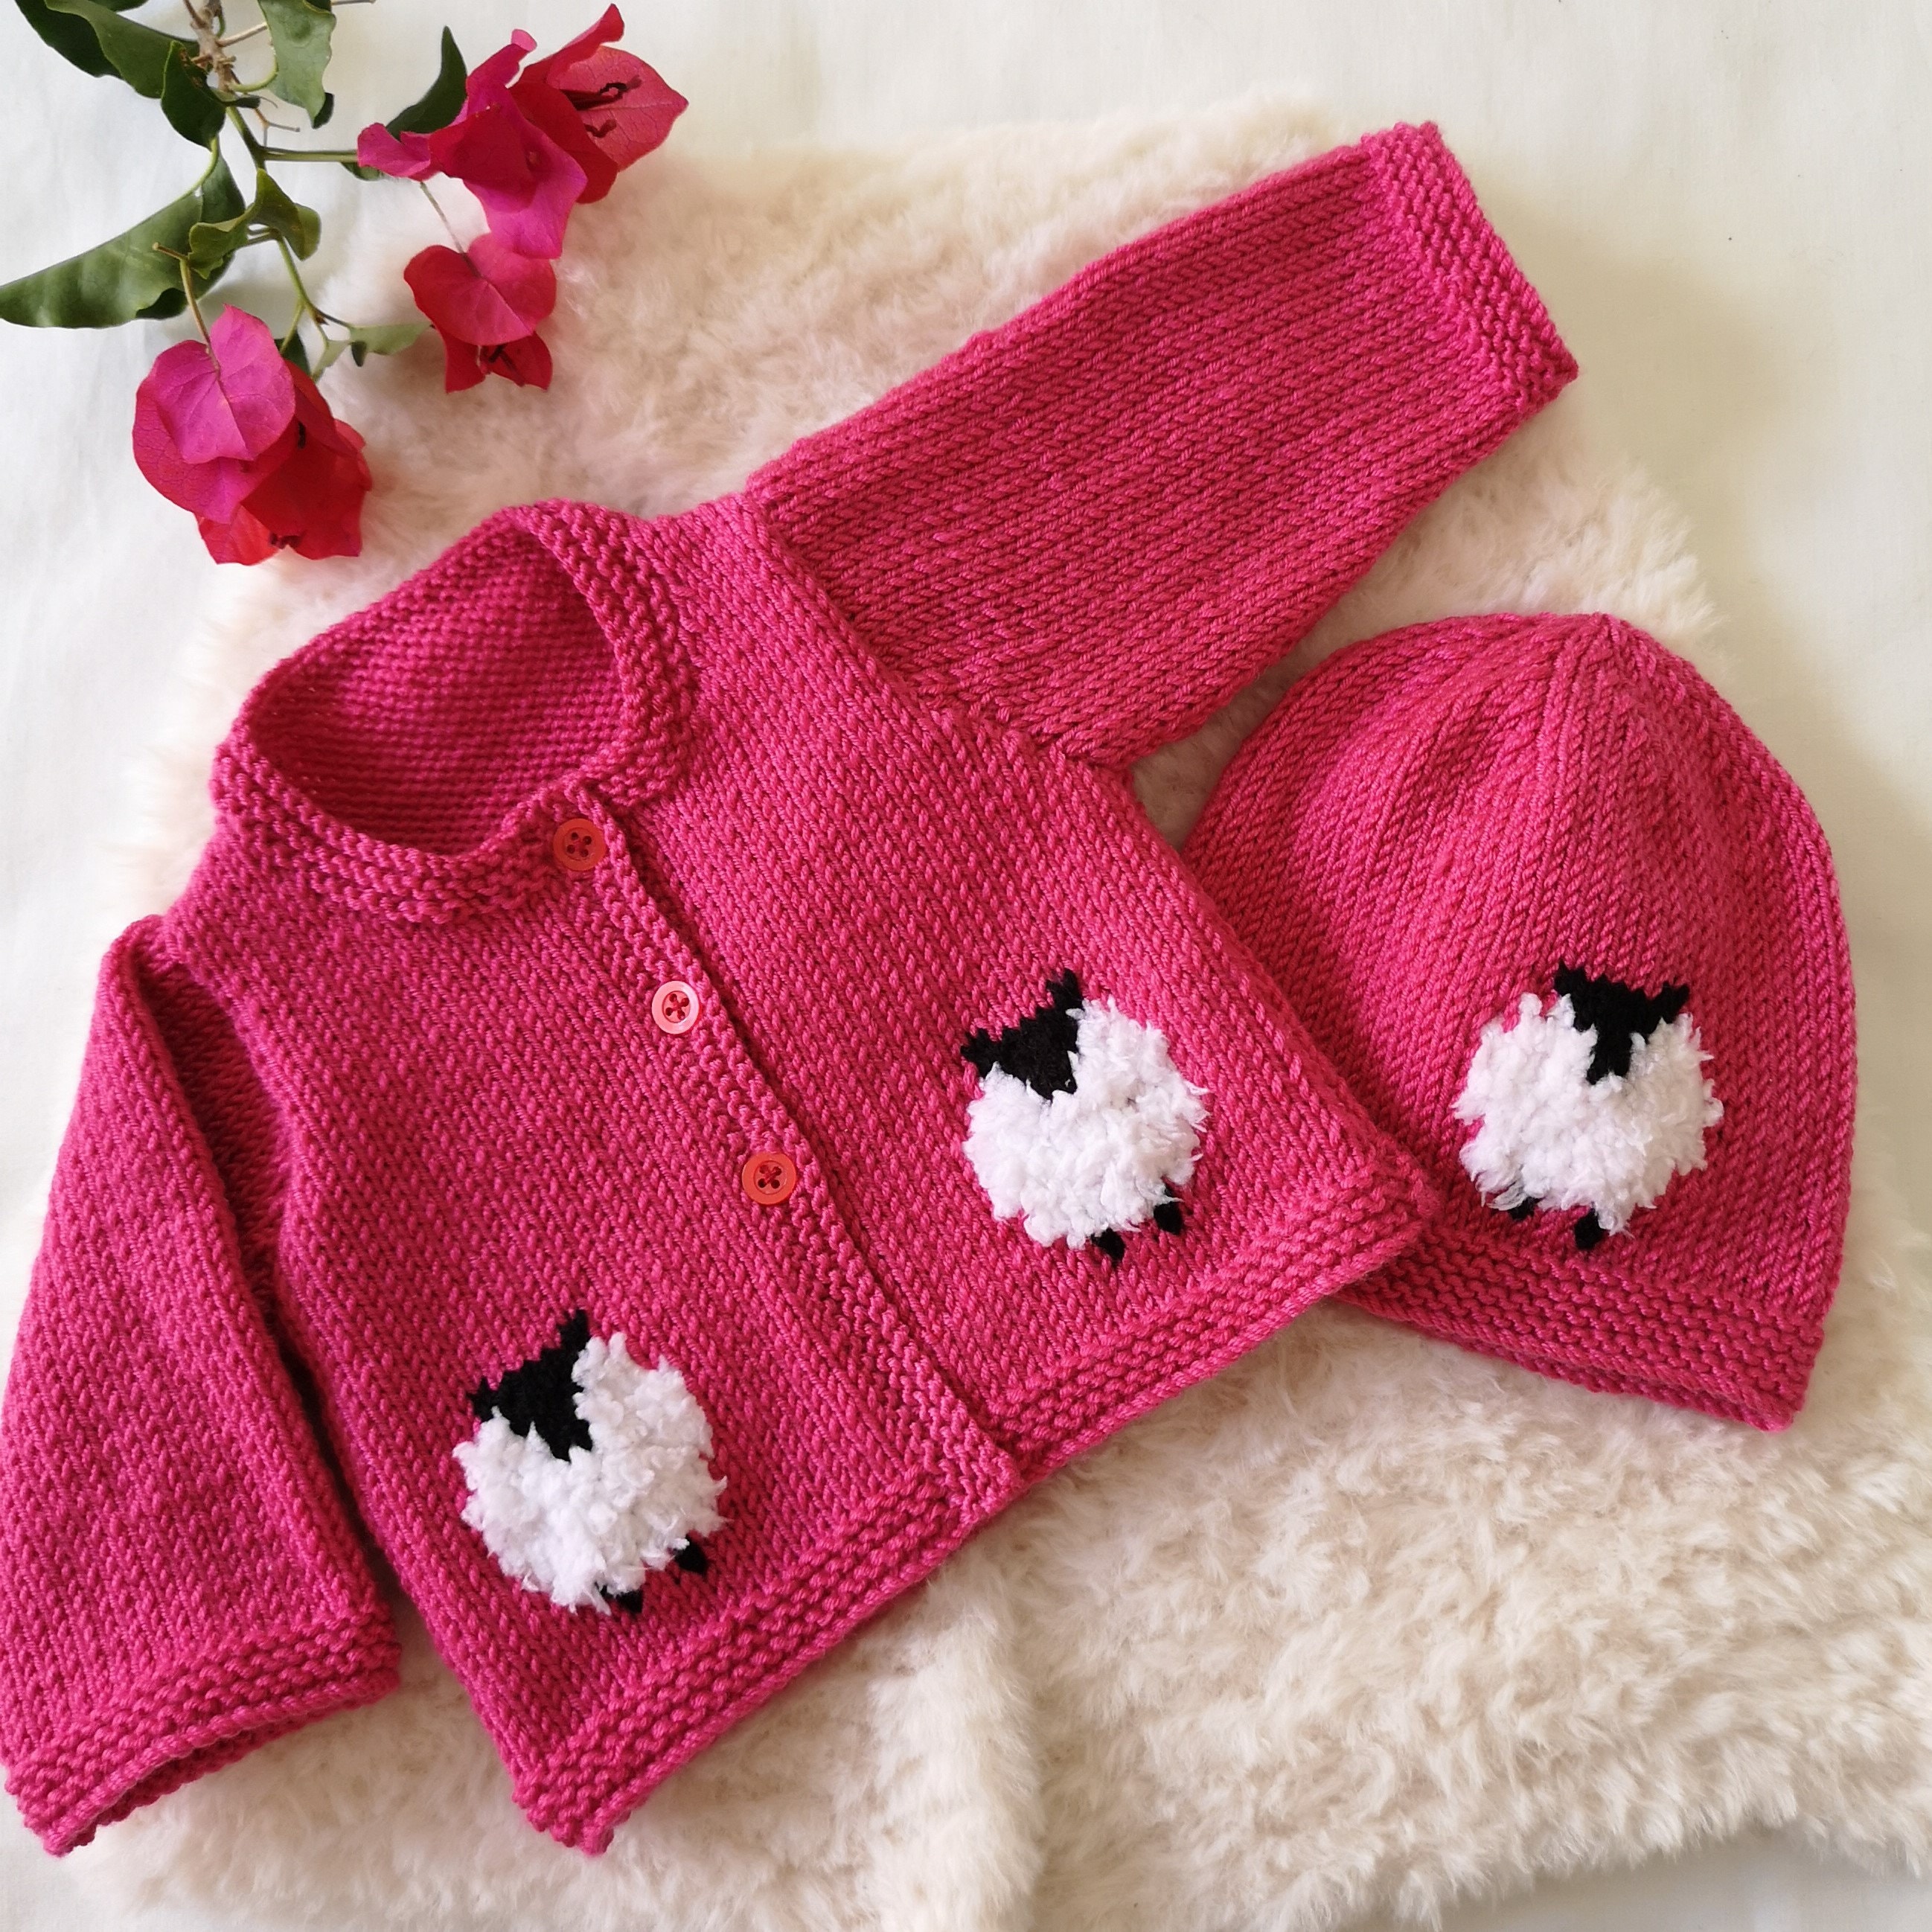 Hat Cotton Sweater Booties and Sweater set Kleding Jongenskleding Babykleding voor jongens Truien Matching Hat and Booties 